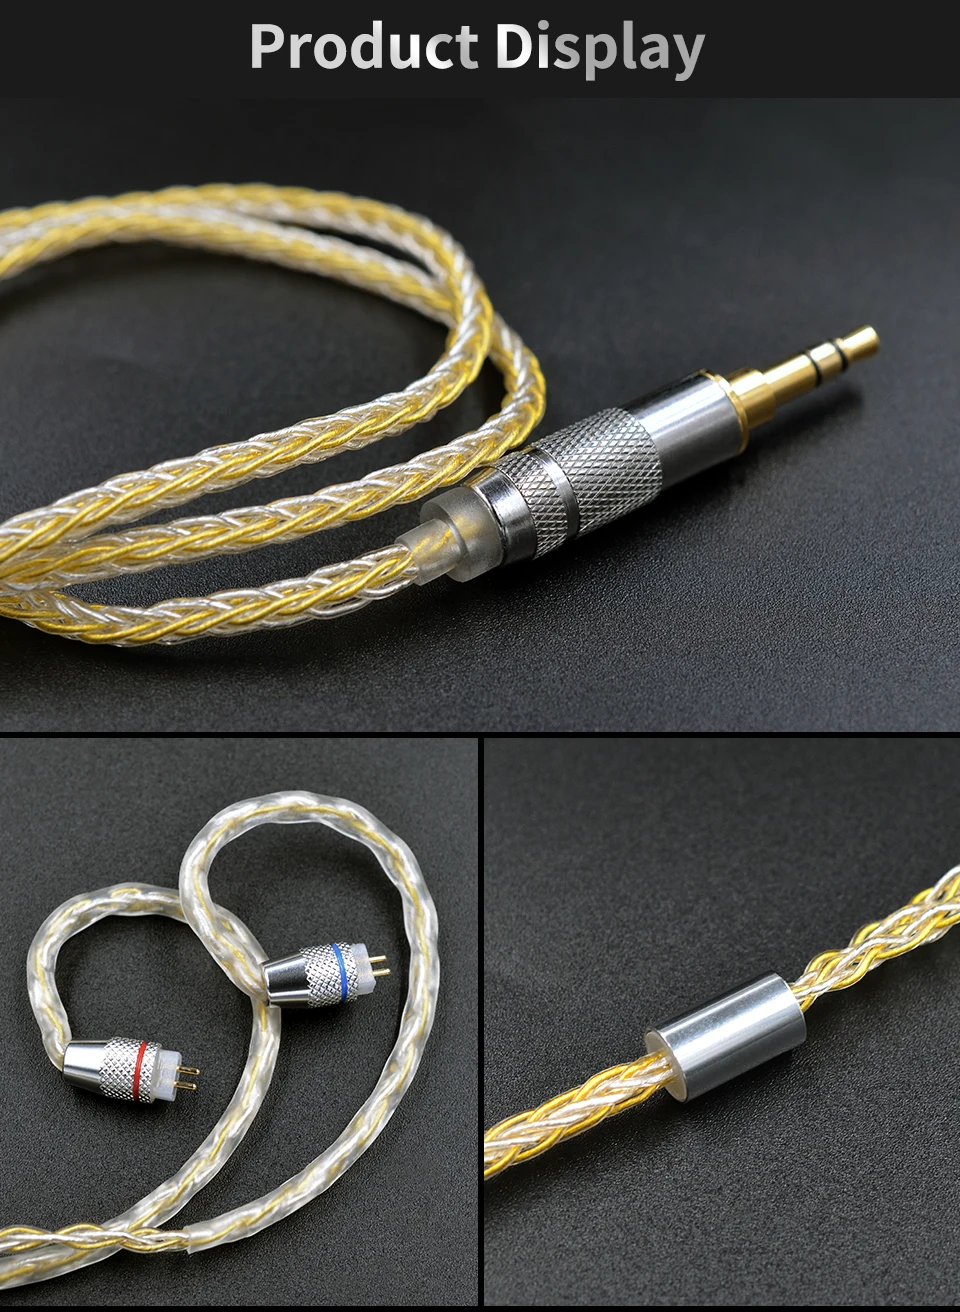 Наушники KZ с золотым и серебряным смешанным покрытием кабель обновления 0,75 мм MMCX наушники провода для оригинальных ZSN ZS10 Pro AS10 AS06 ZST ES4 BA10